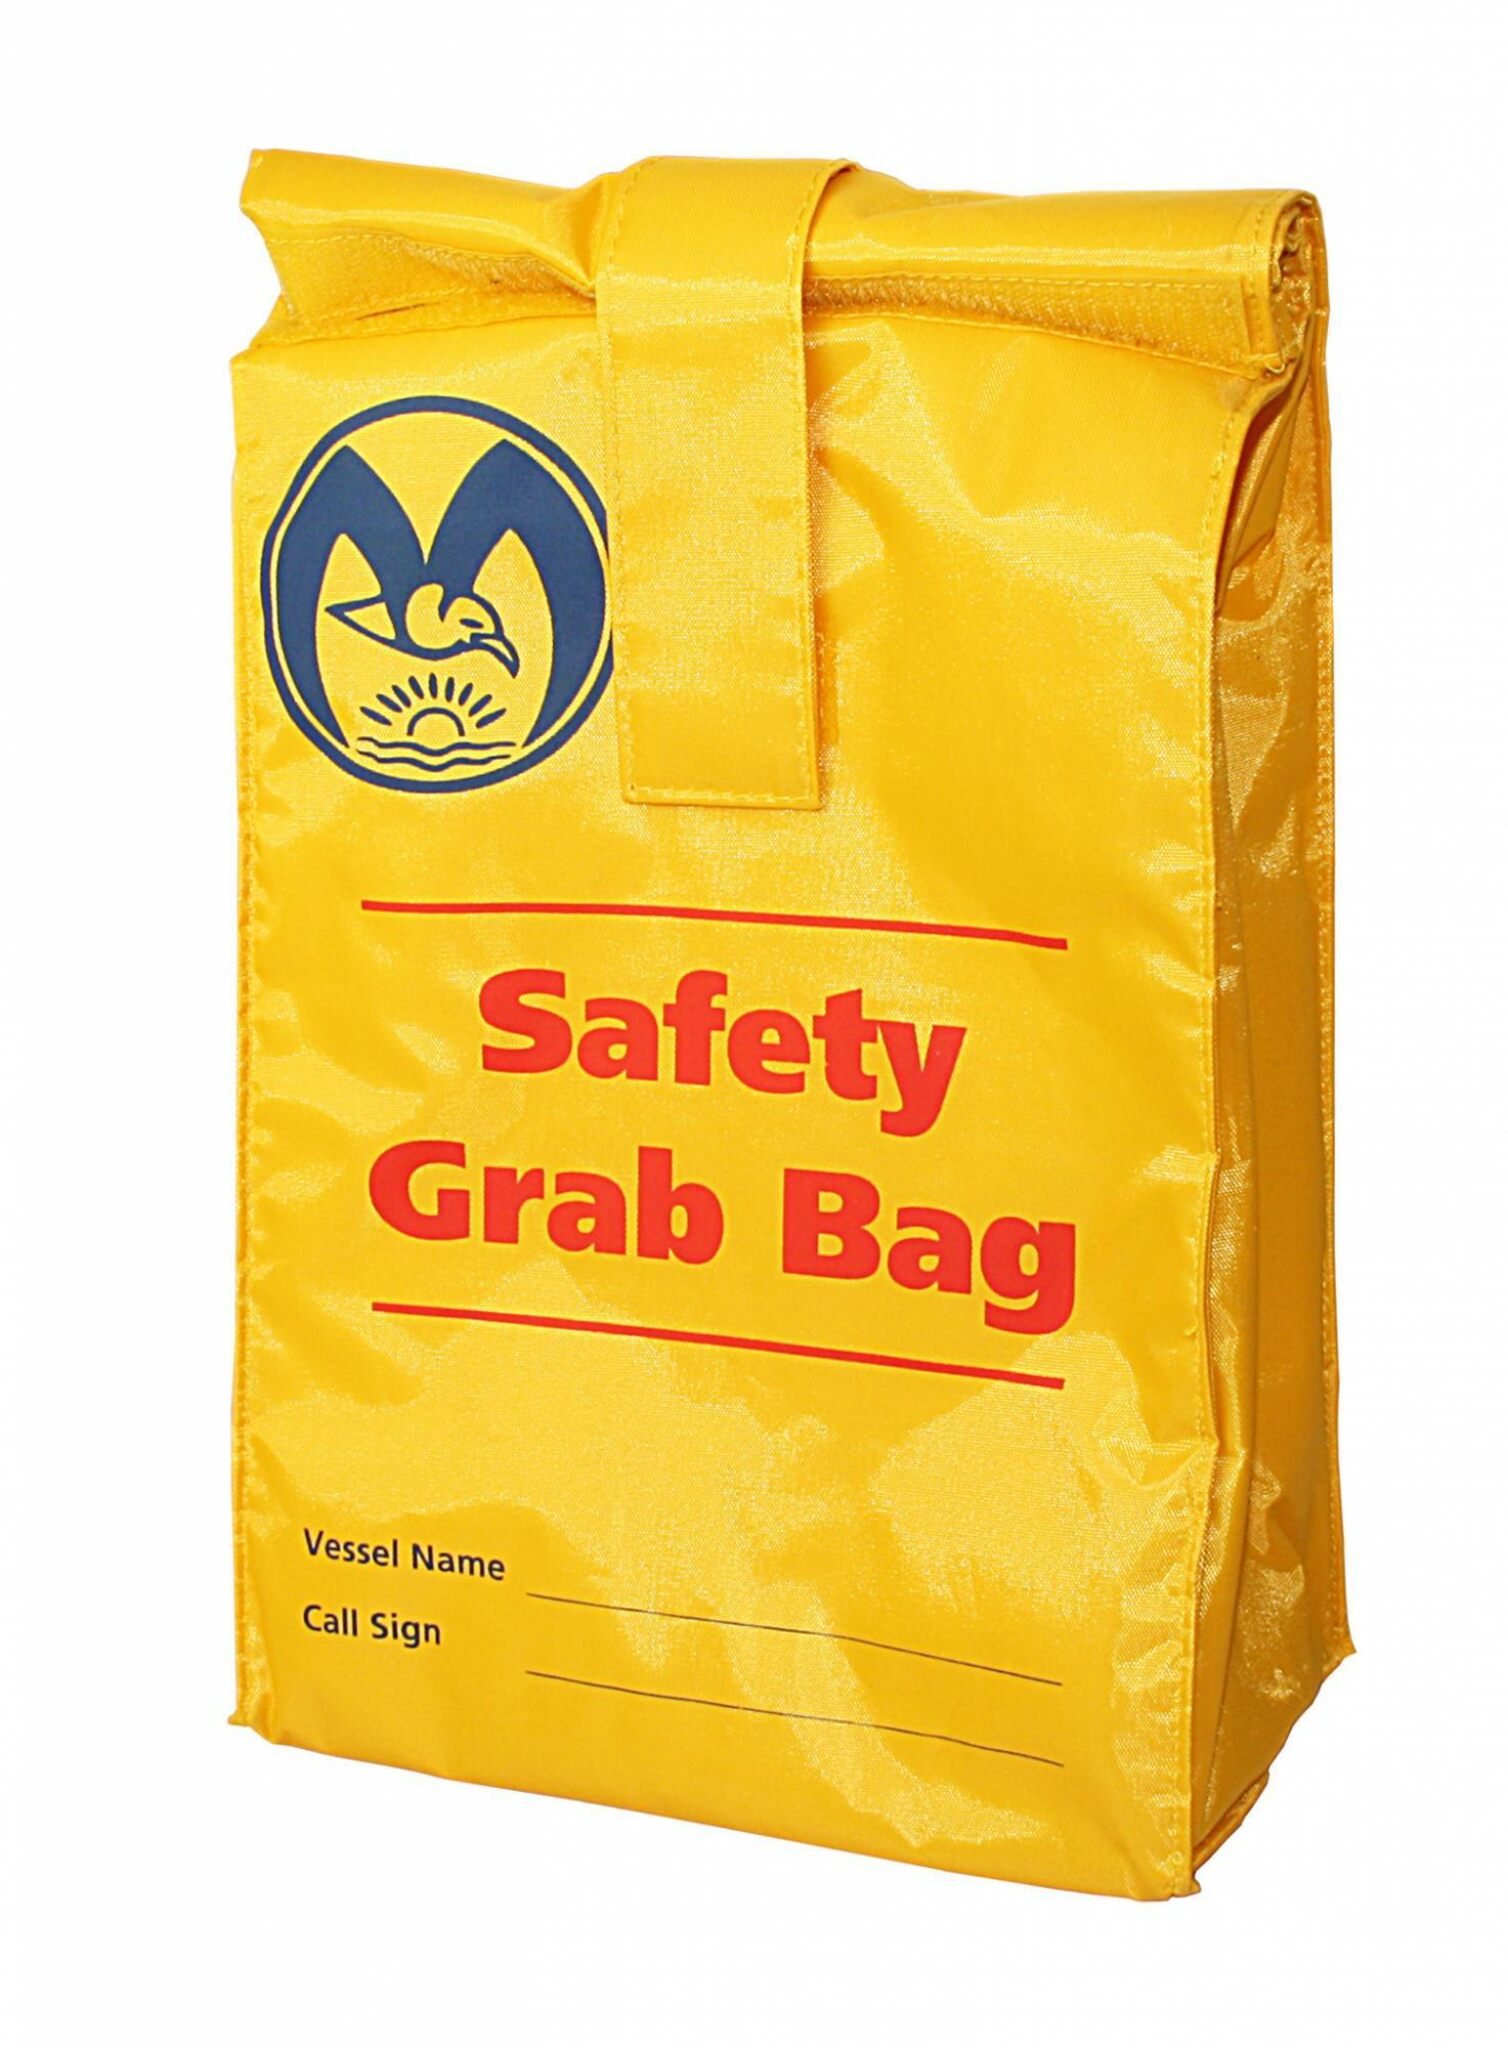 Emergency Bag / Grab Bag